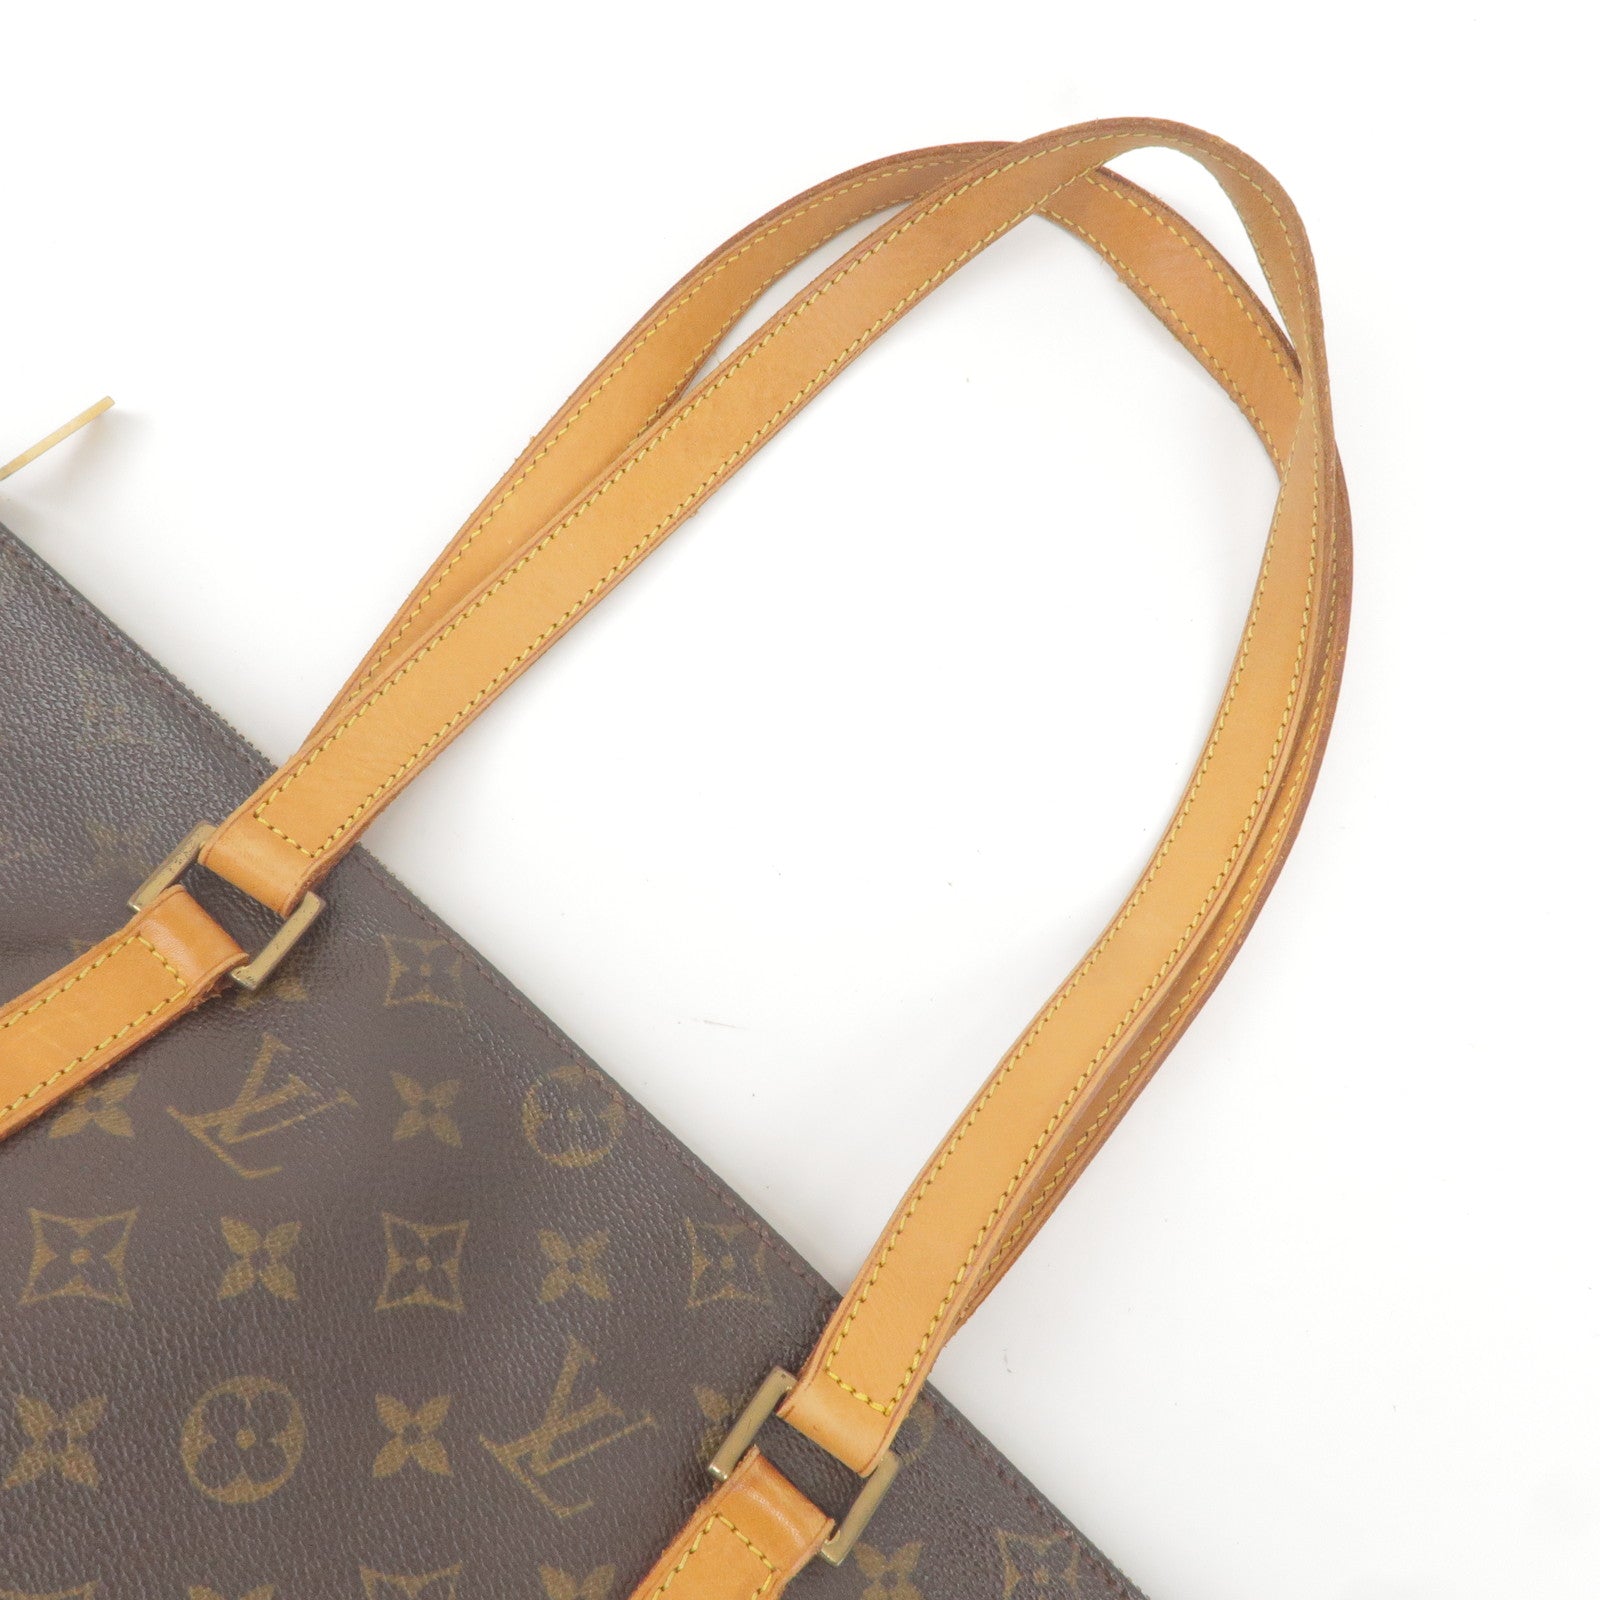 Louis Vuitton Cabas Mezzo Monogram Canvas - ShopStyle Tote Bags